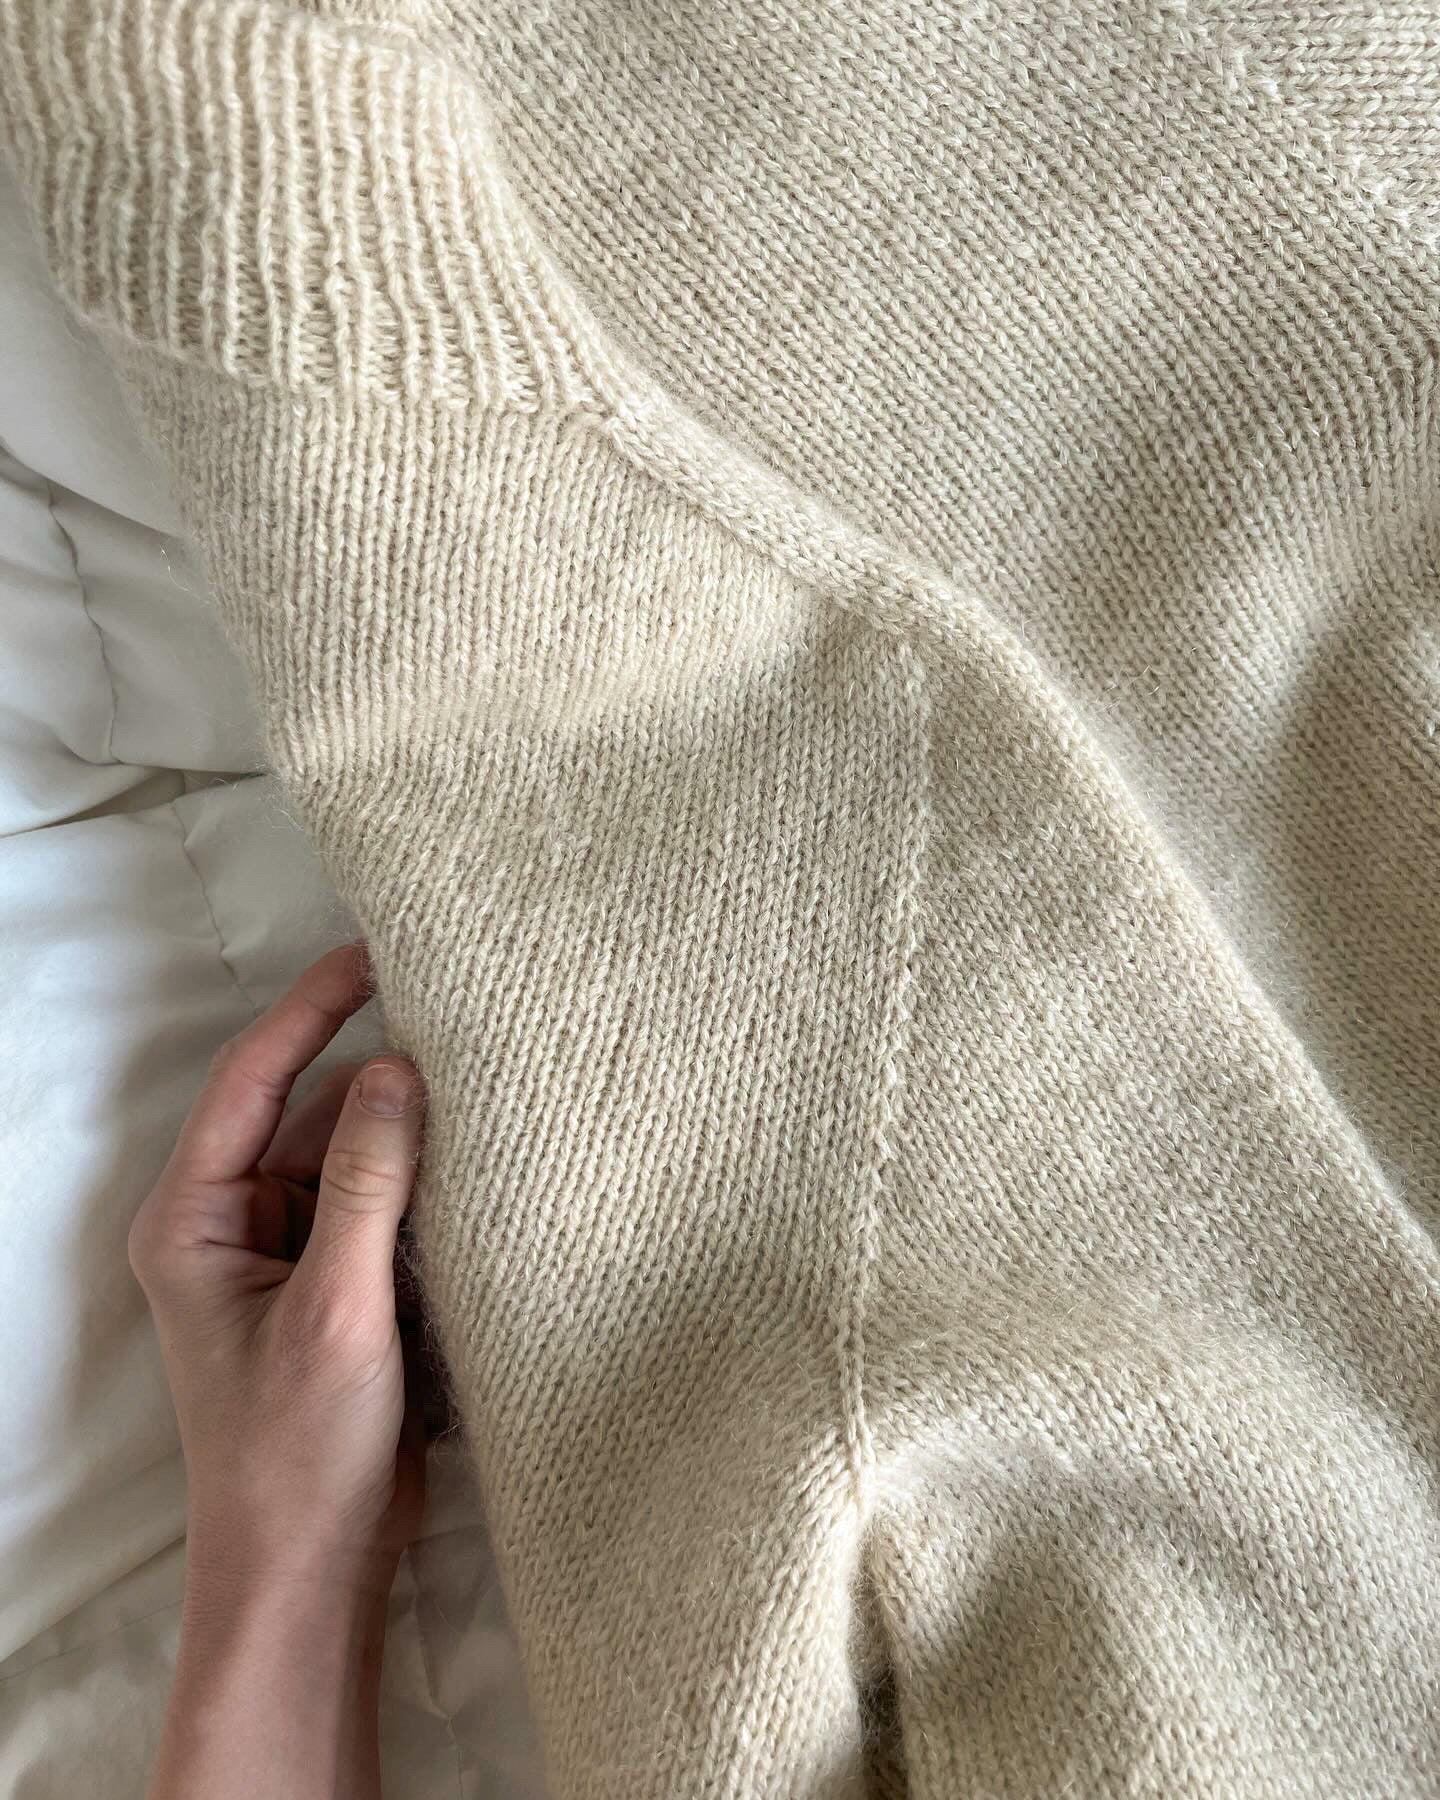 Nola Sweater/Dress (svenska)